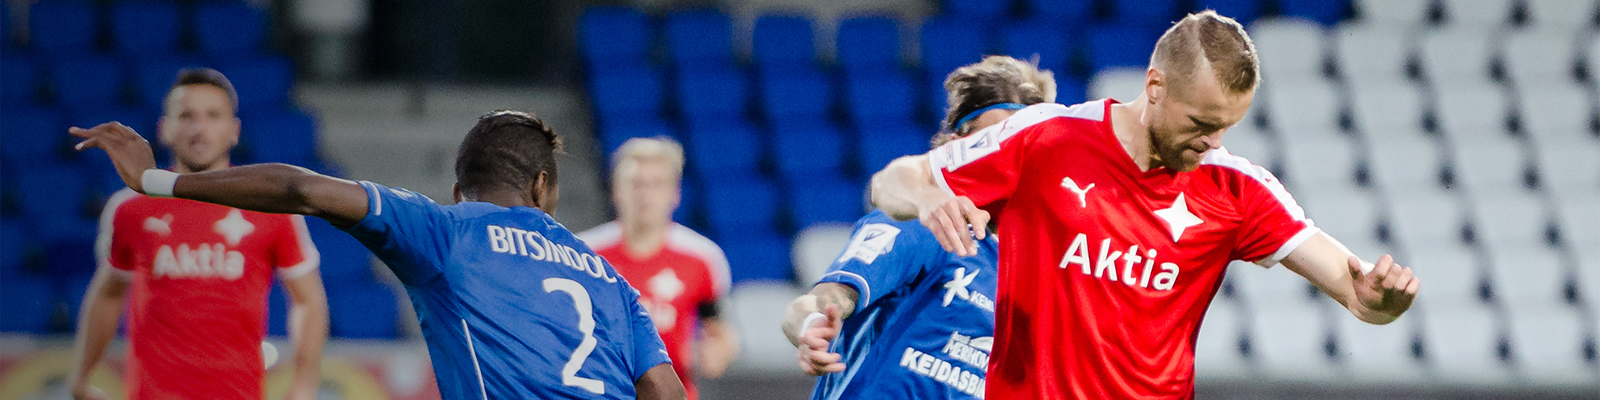 Veikkausliigaottelu PS Kemi – HIFK pelataan Rovaniemen keskuskentällä